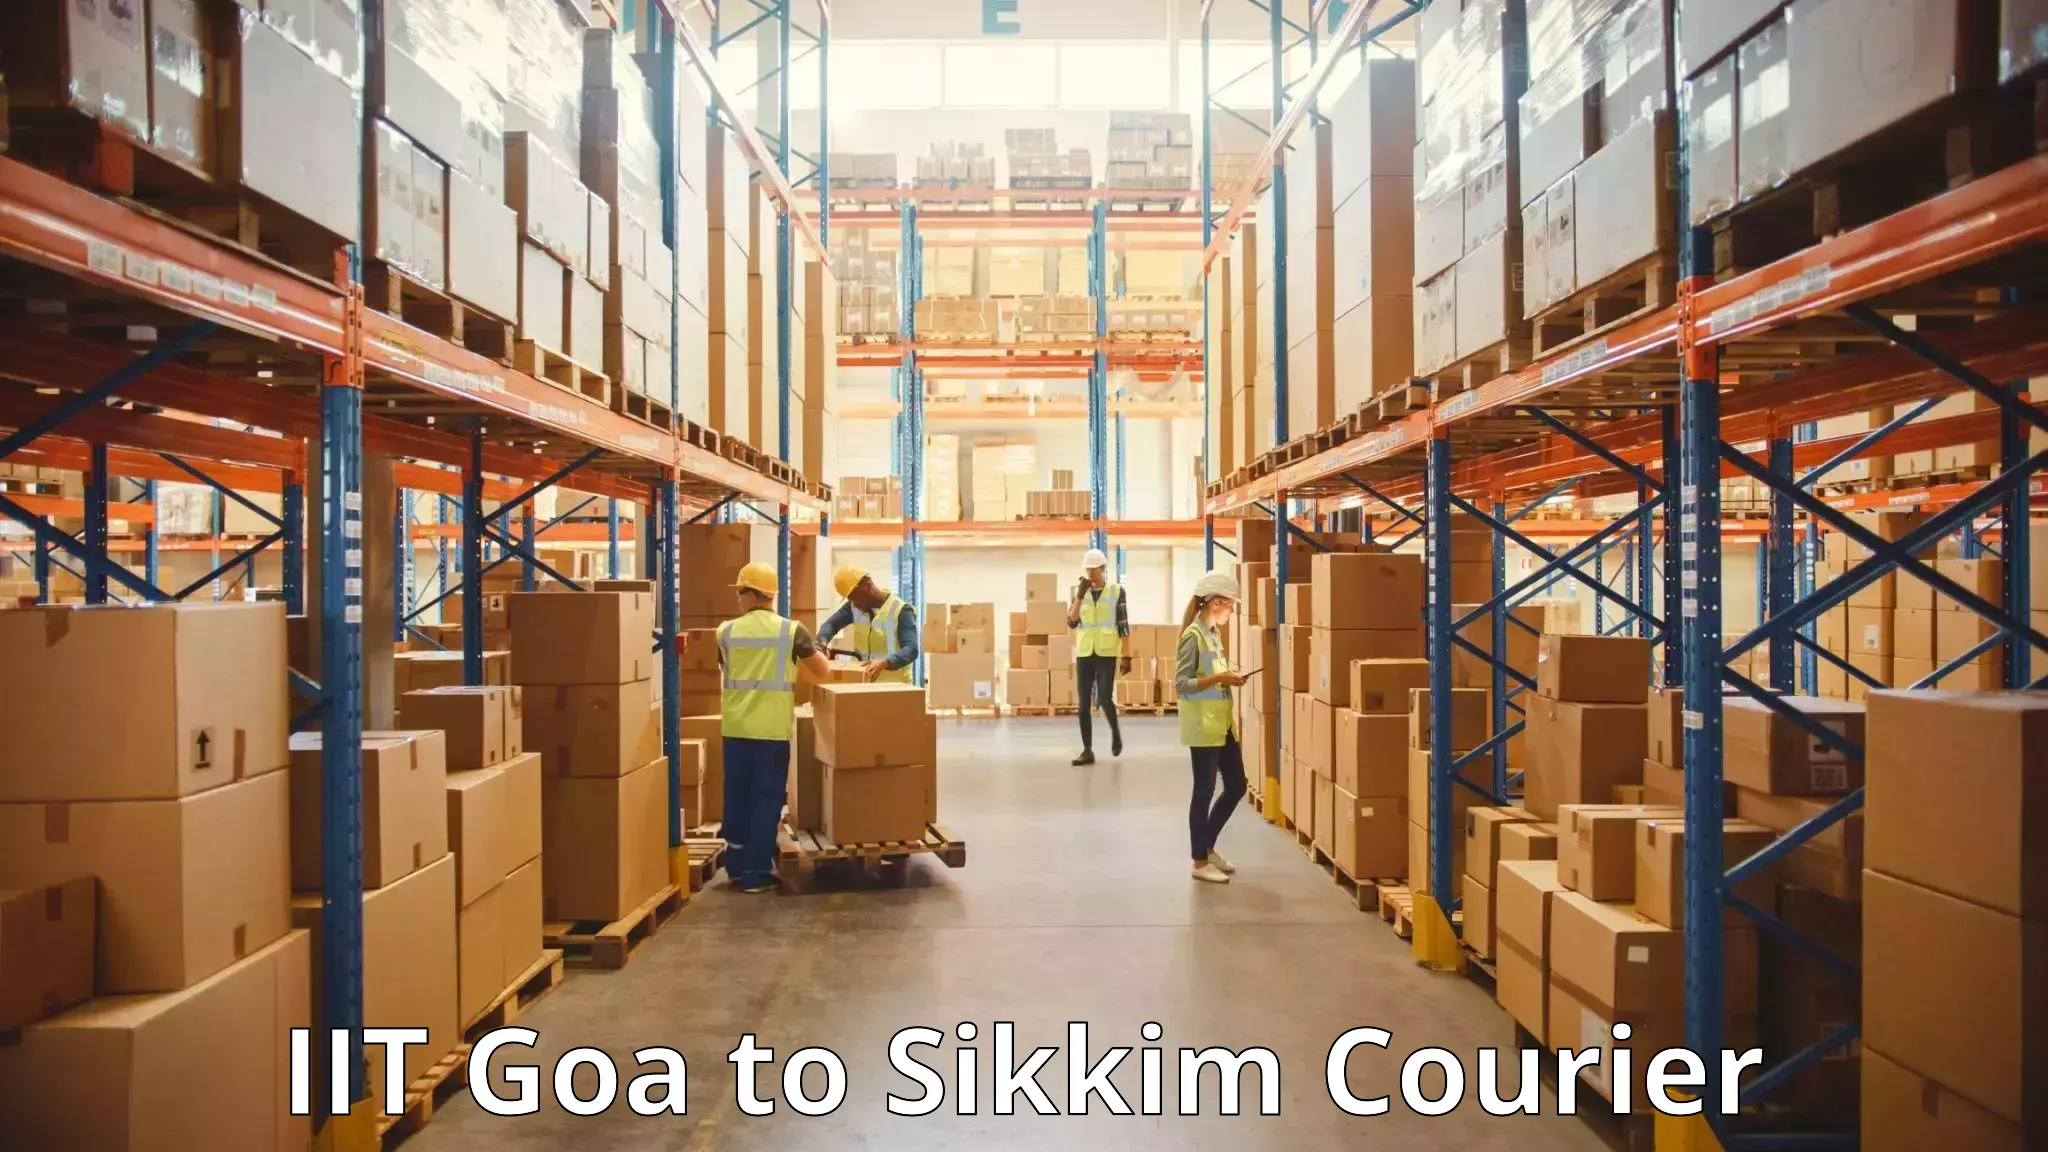 Baggage transport scheduler IIT Goa to East Sikkim